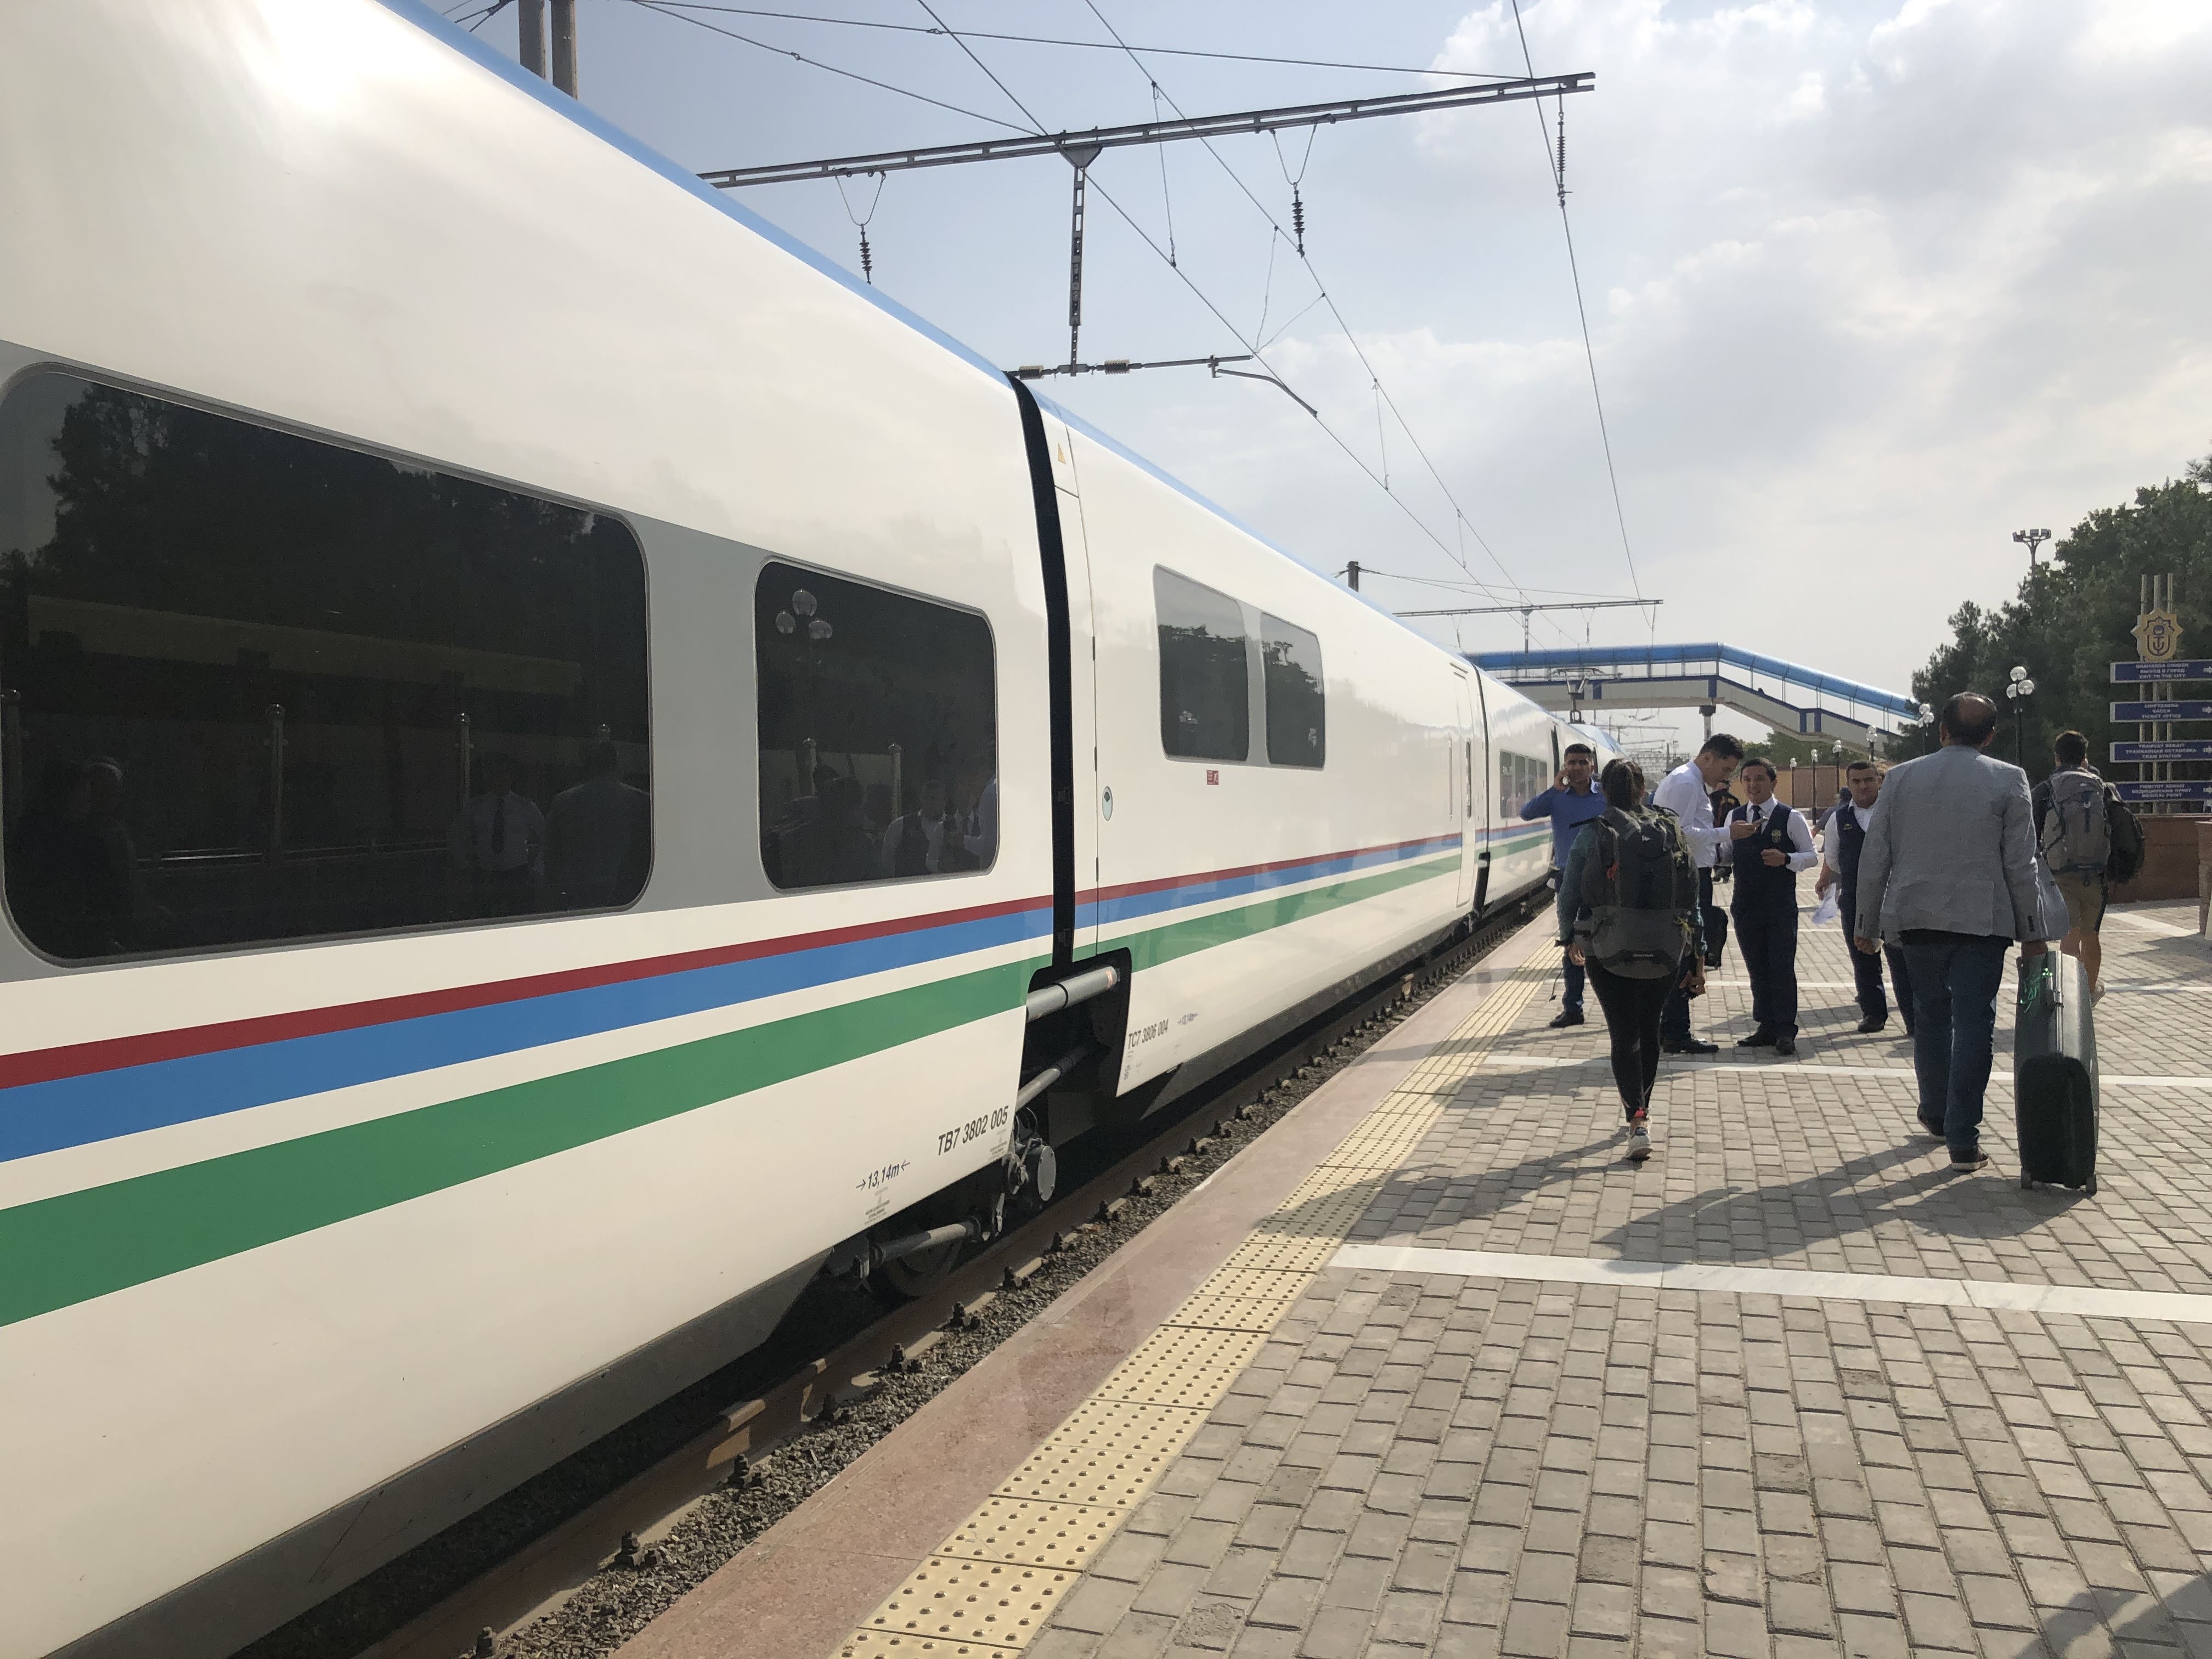 ウズベキスタン鉄道アフラシャブ号の予約は代理店経由が比較的簡単 Pt Lifelog